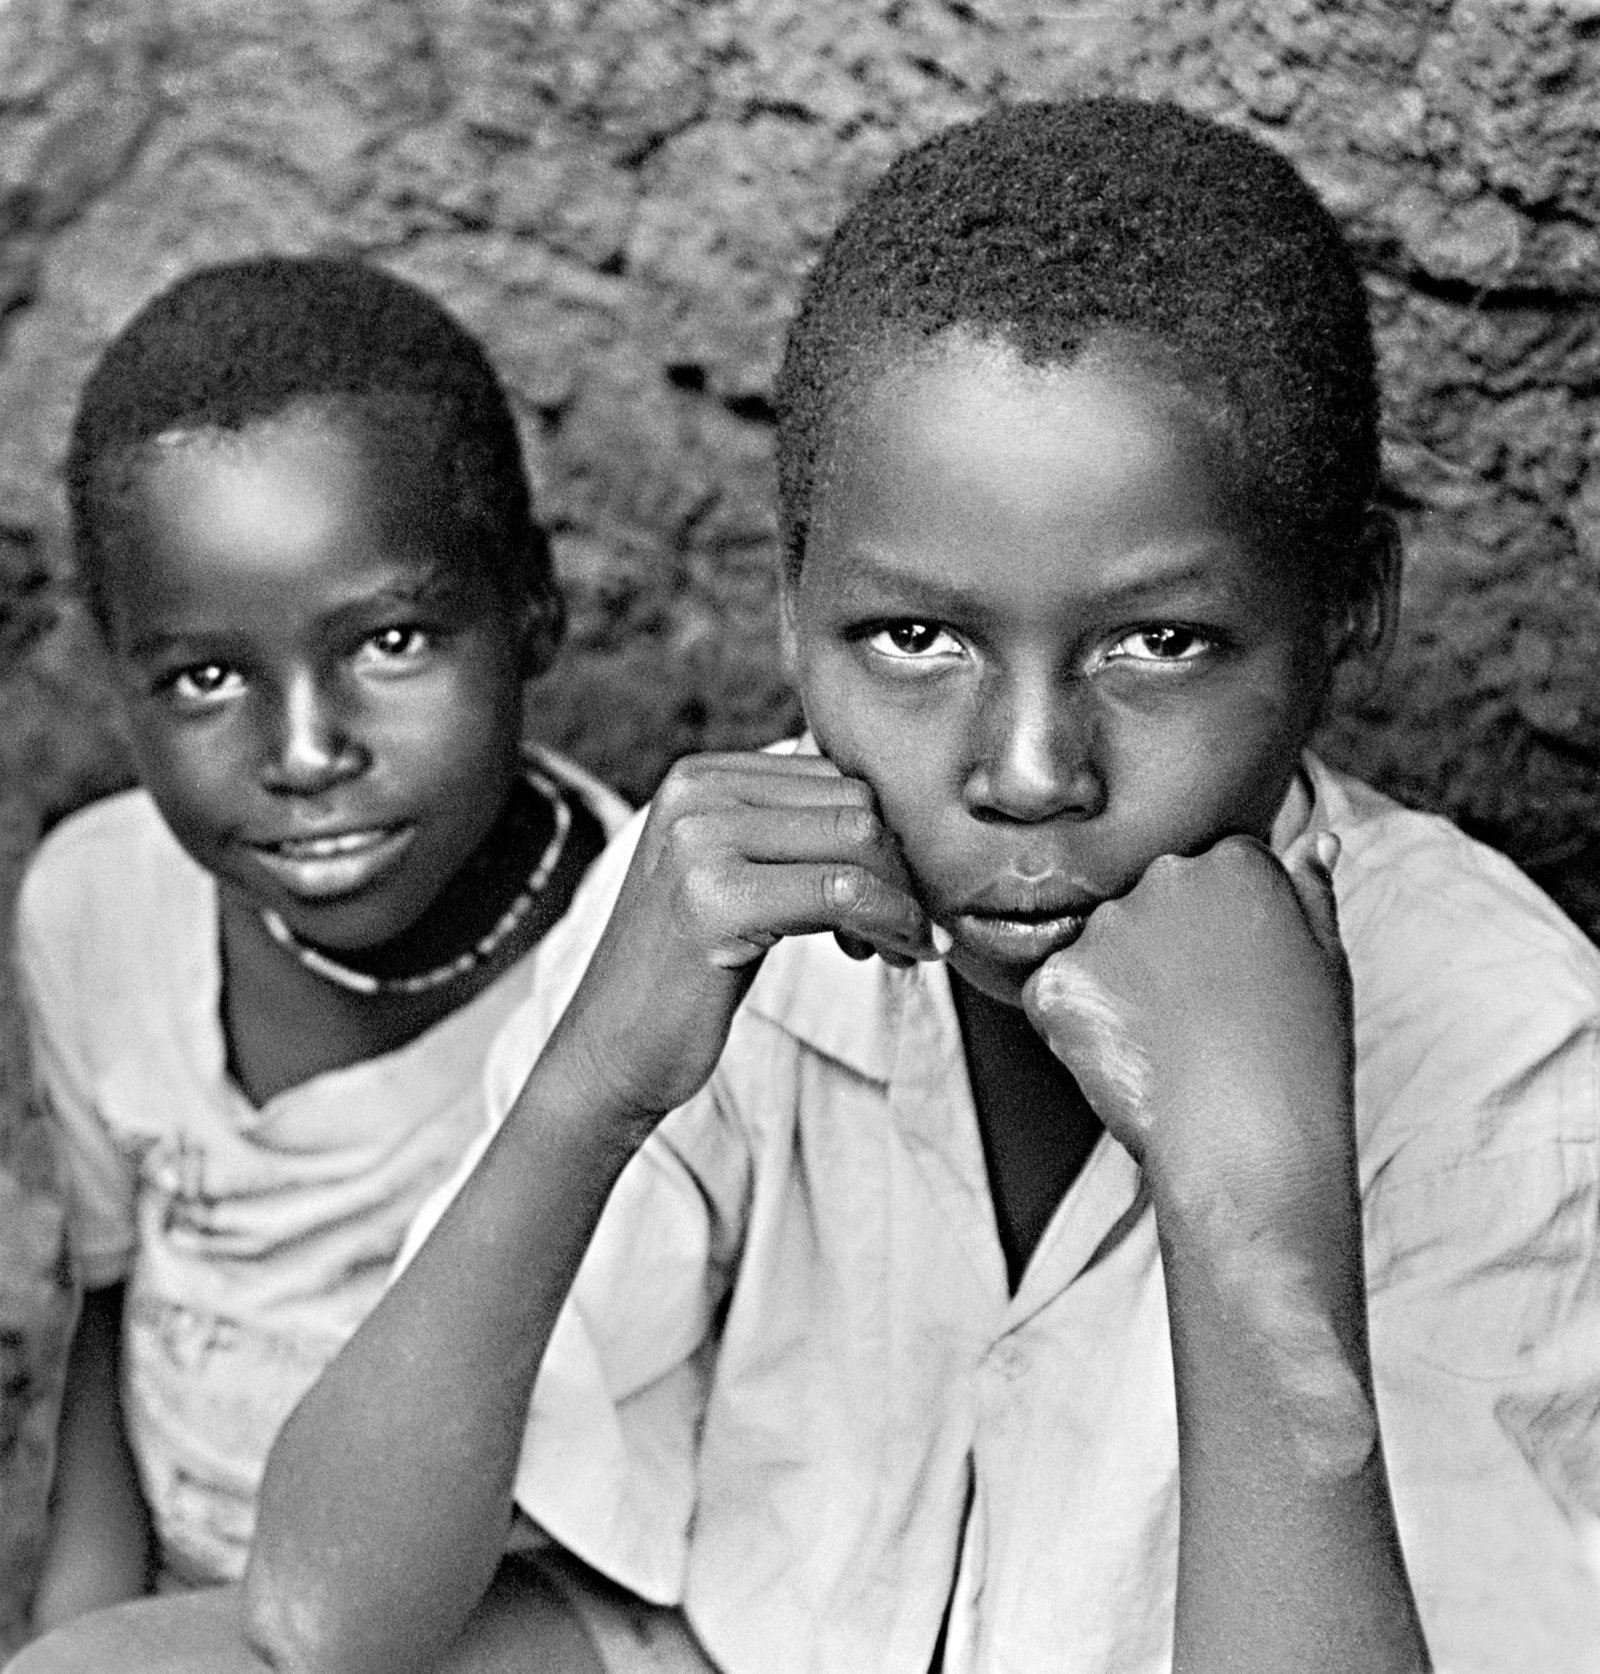 African Masai boys portrait